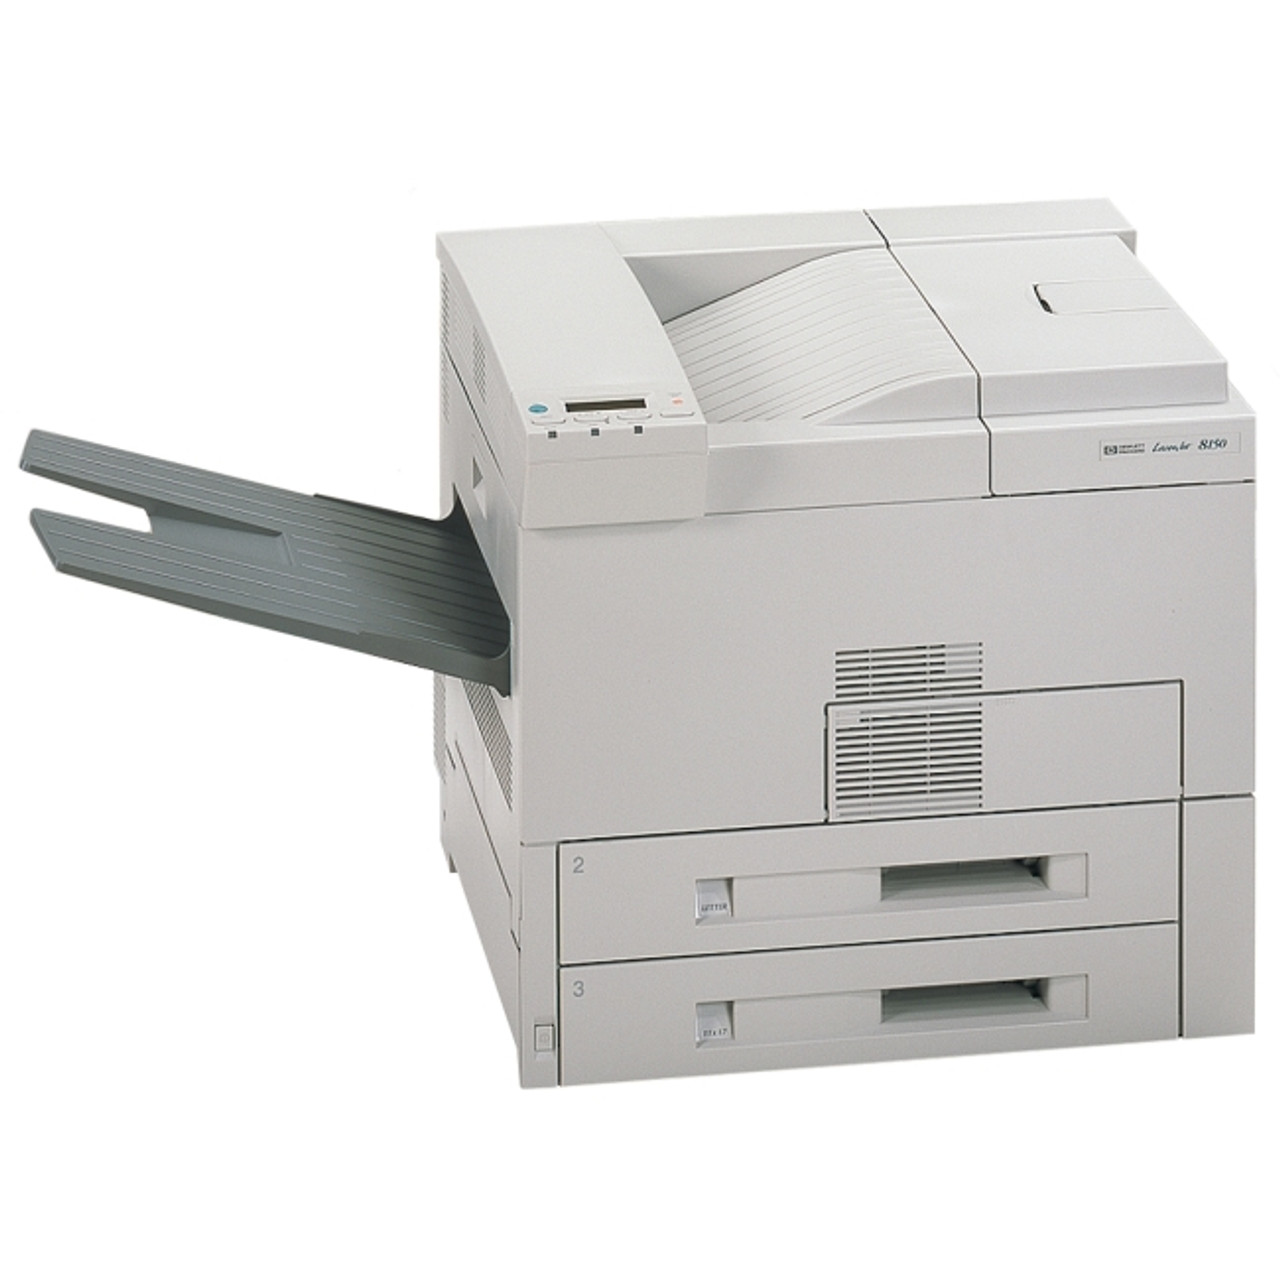 LaserJet 8150 Printer series